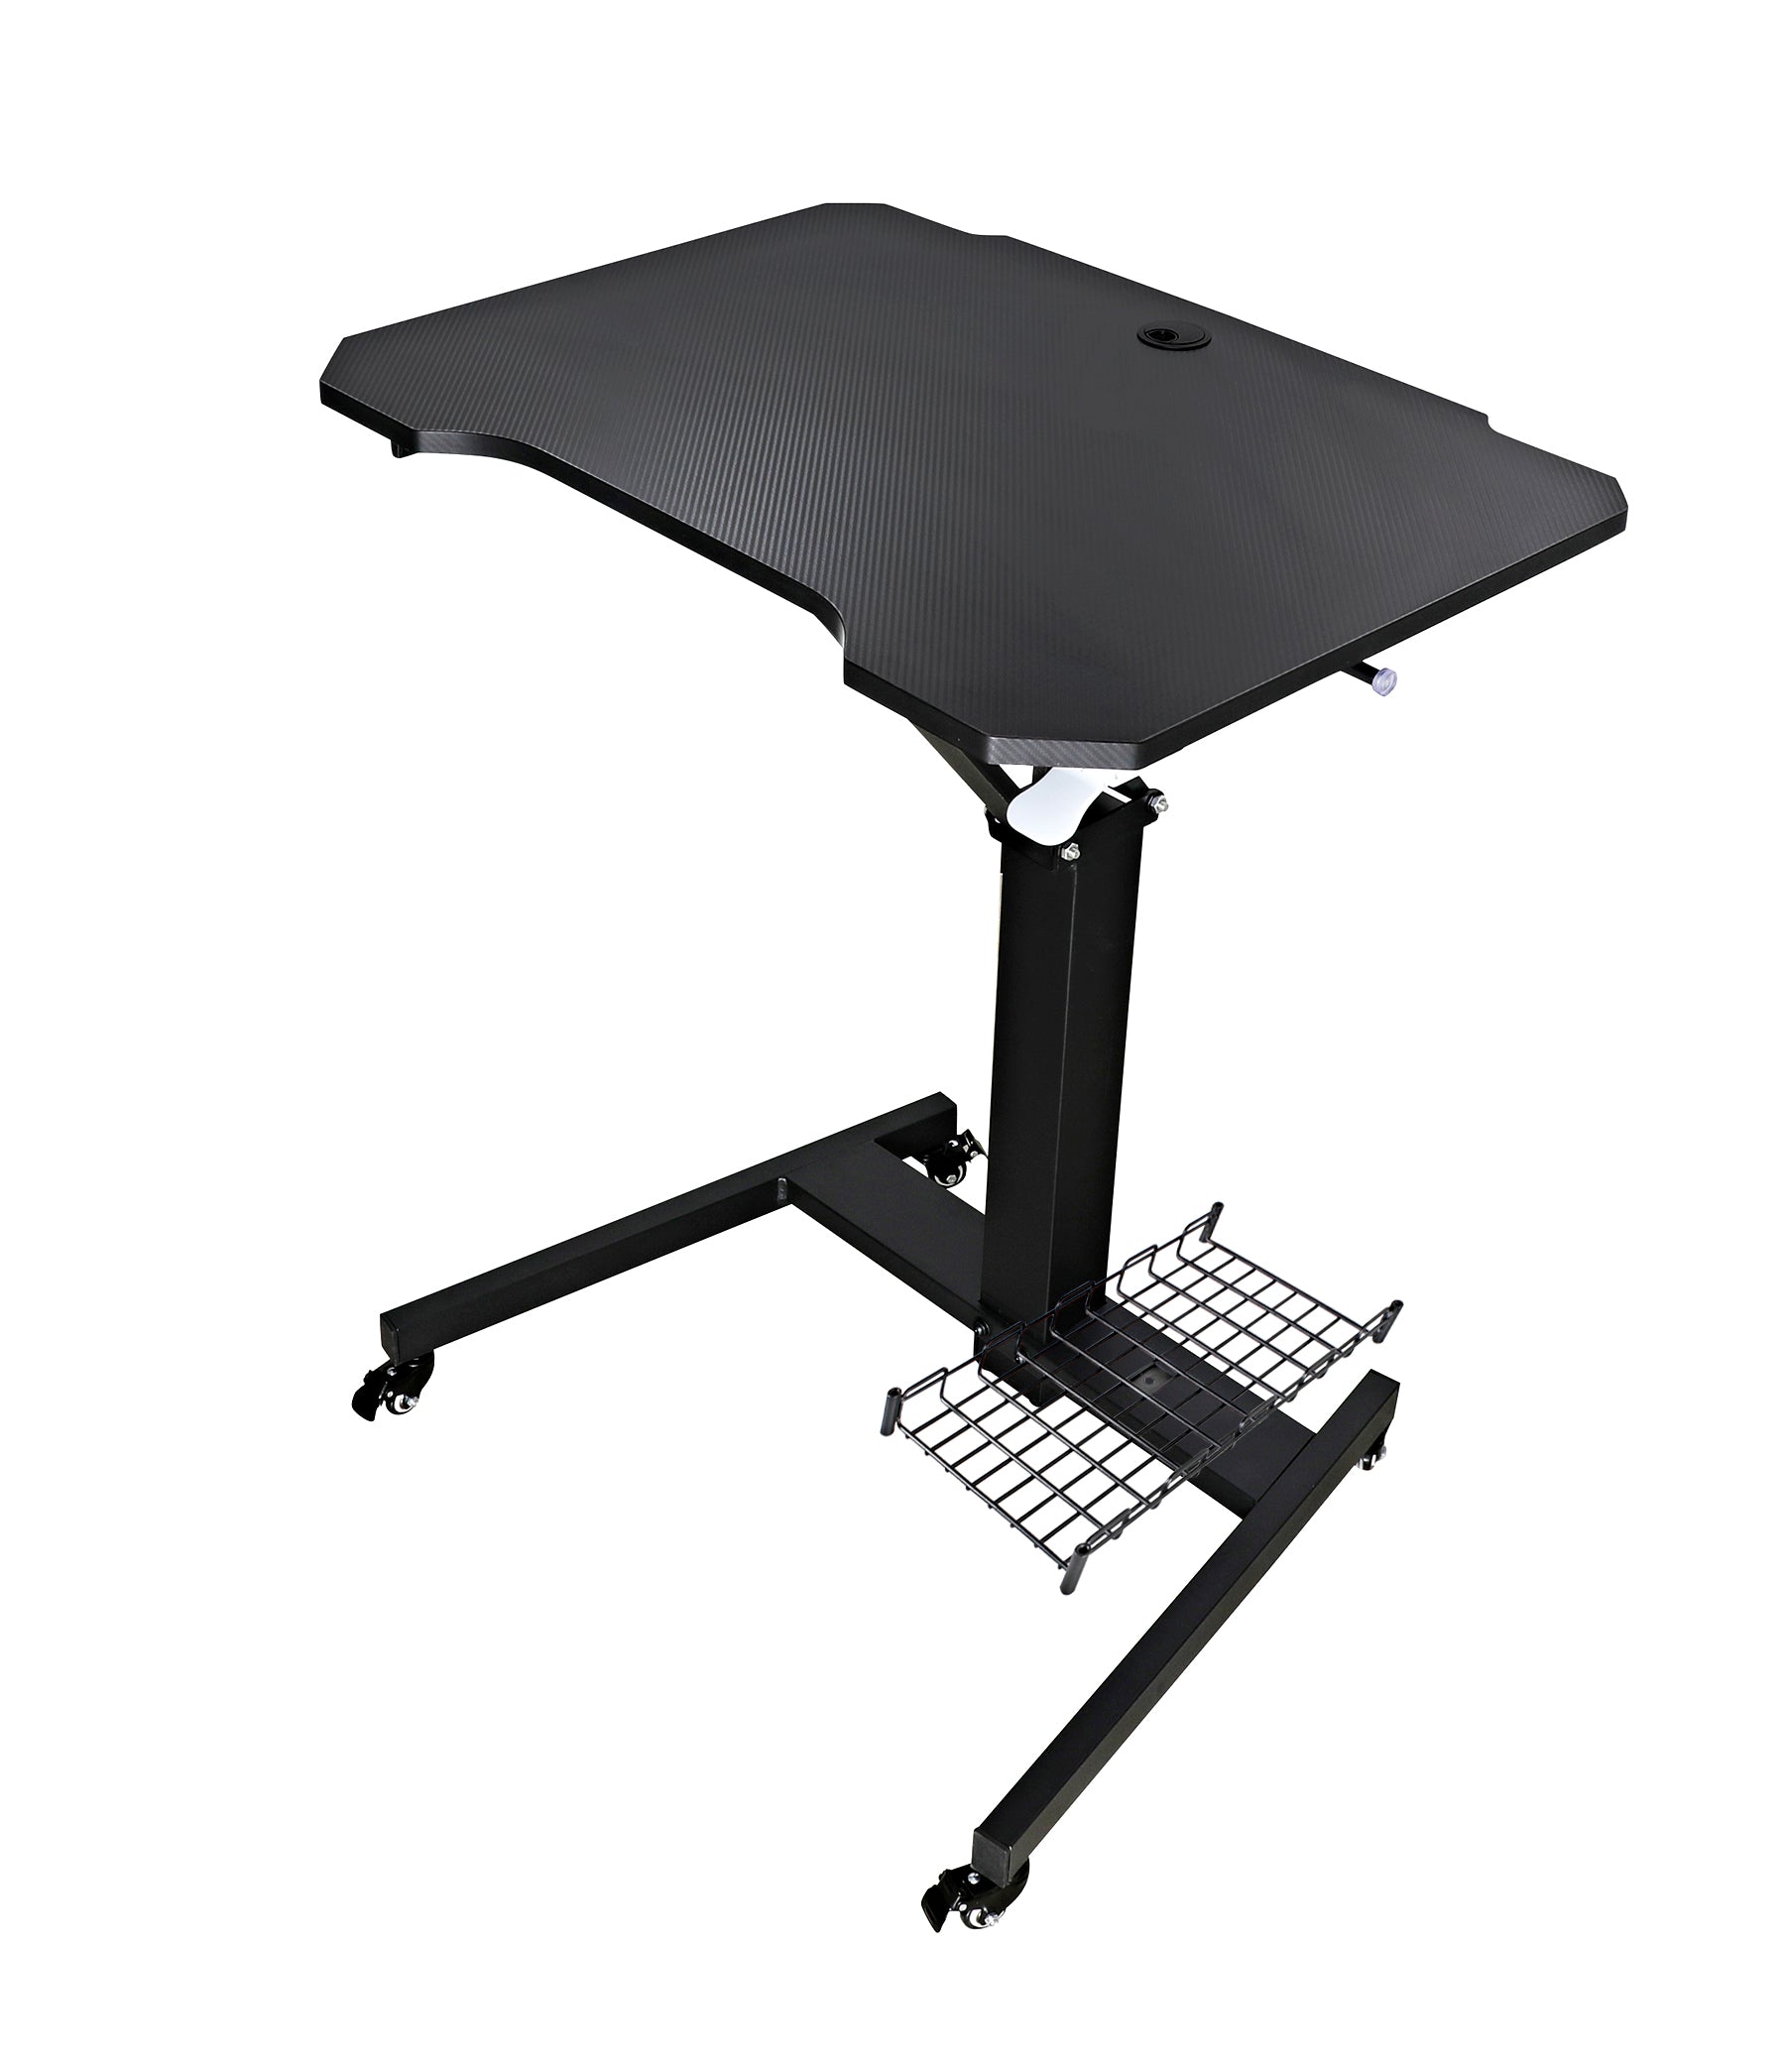 Mobile Standing Game Desk Height Adjustable Pneumatic Adjustable, Workstation, Study Desk Black+Computer Tower Stand